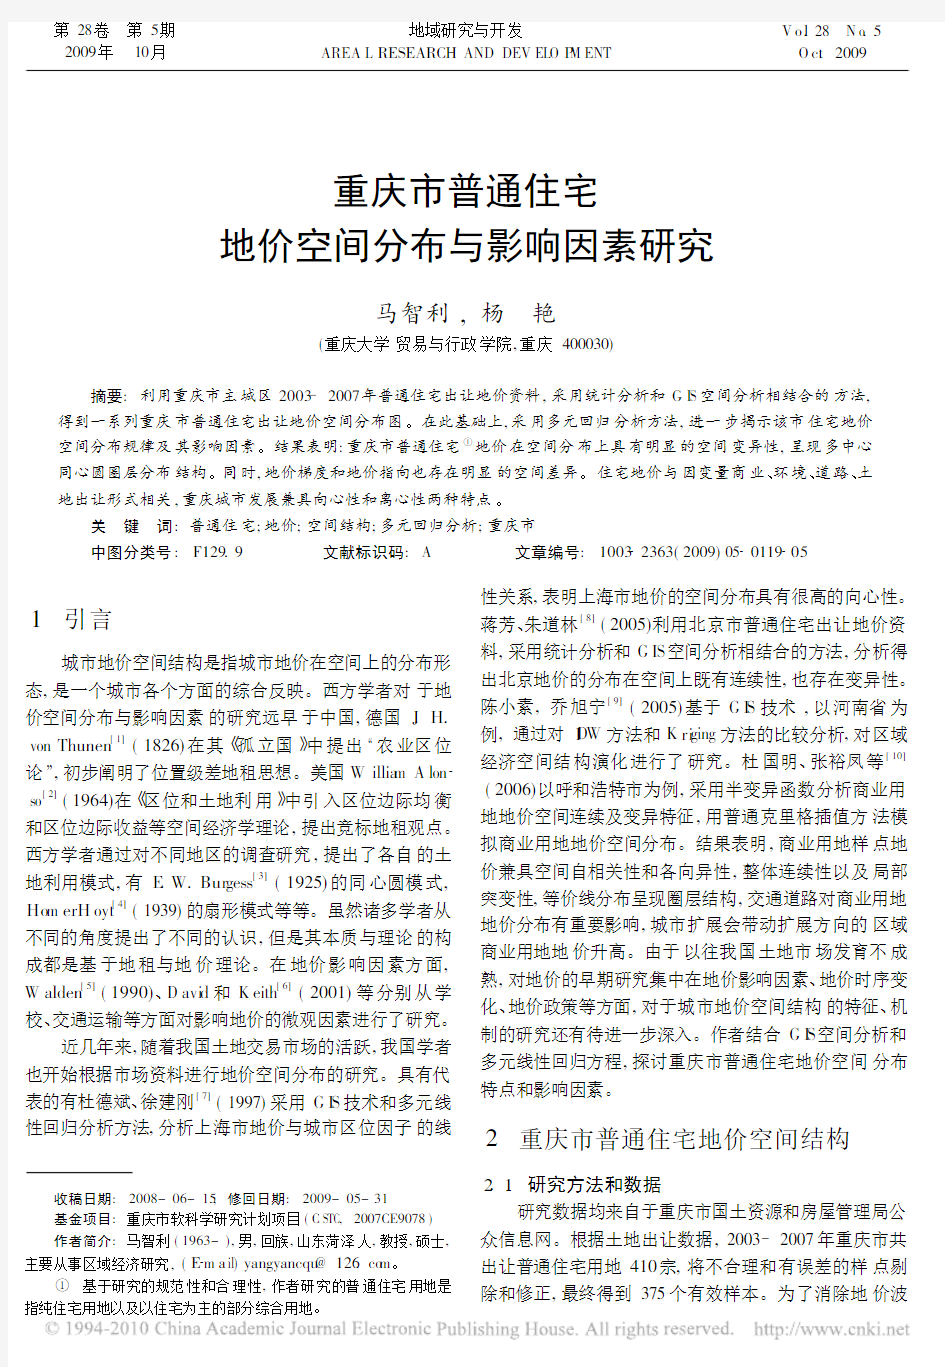 重庆市普通住宅地价空间分布与影响因素研究